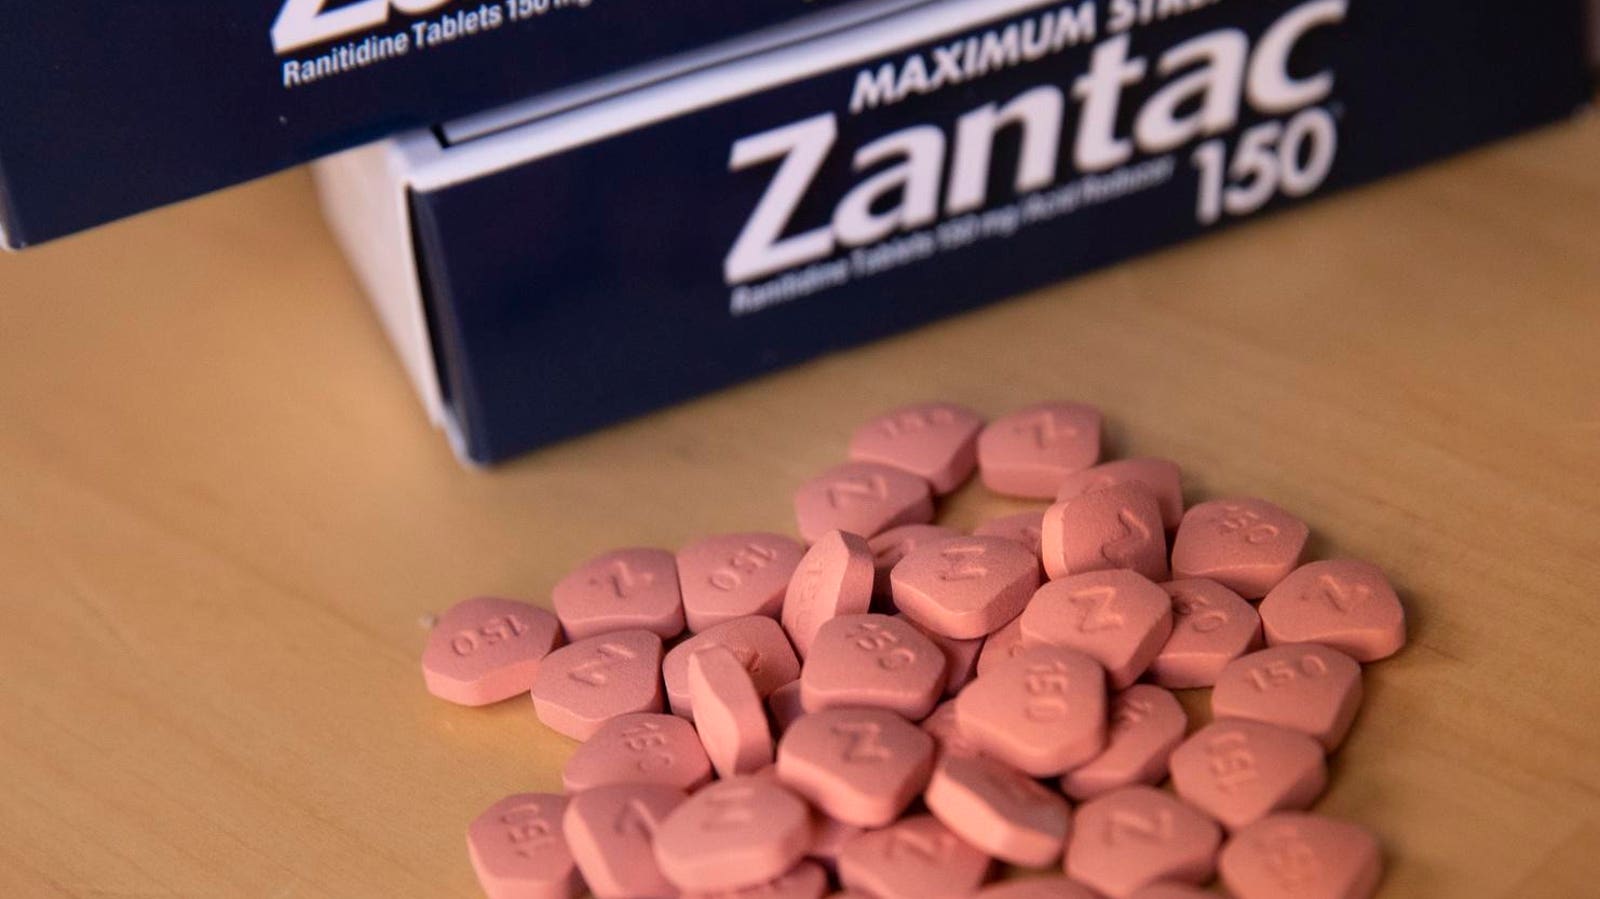 GSK settles Zantac cases after claiming popular heartburn drug causes cancer